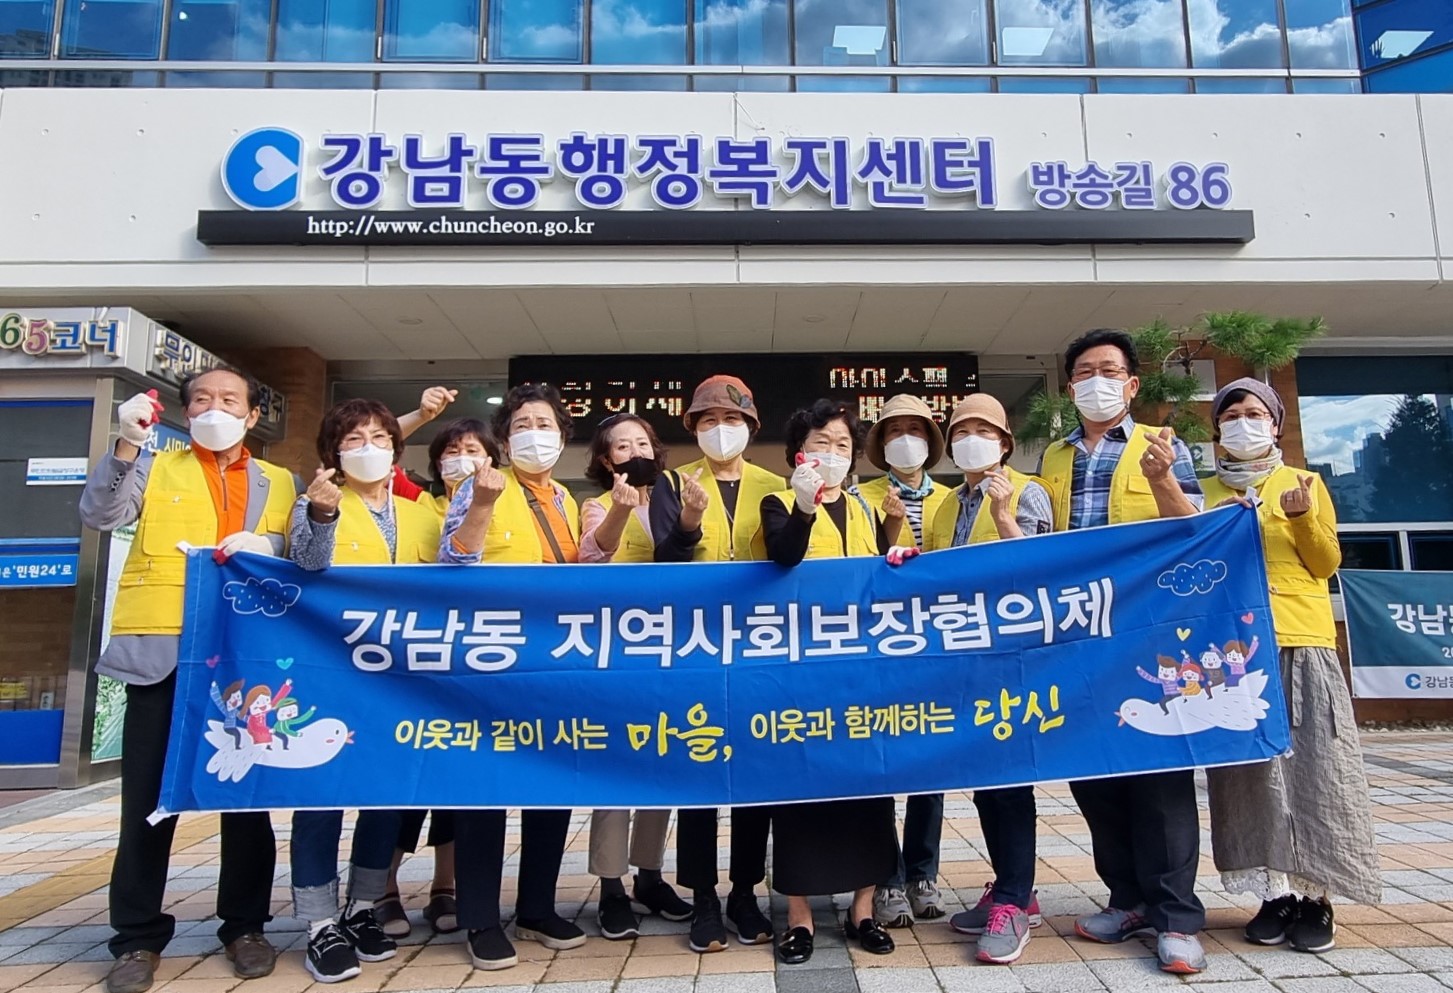 210915 강남동 지역사회보장협의체 환경 정화 봉사